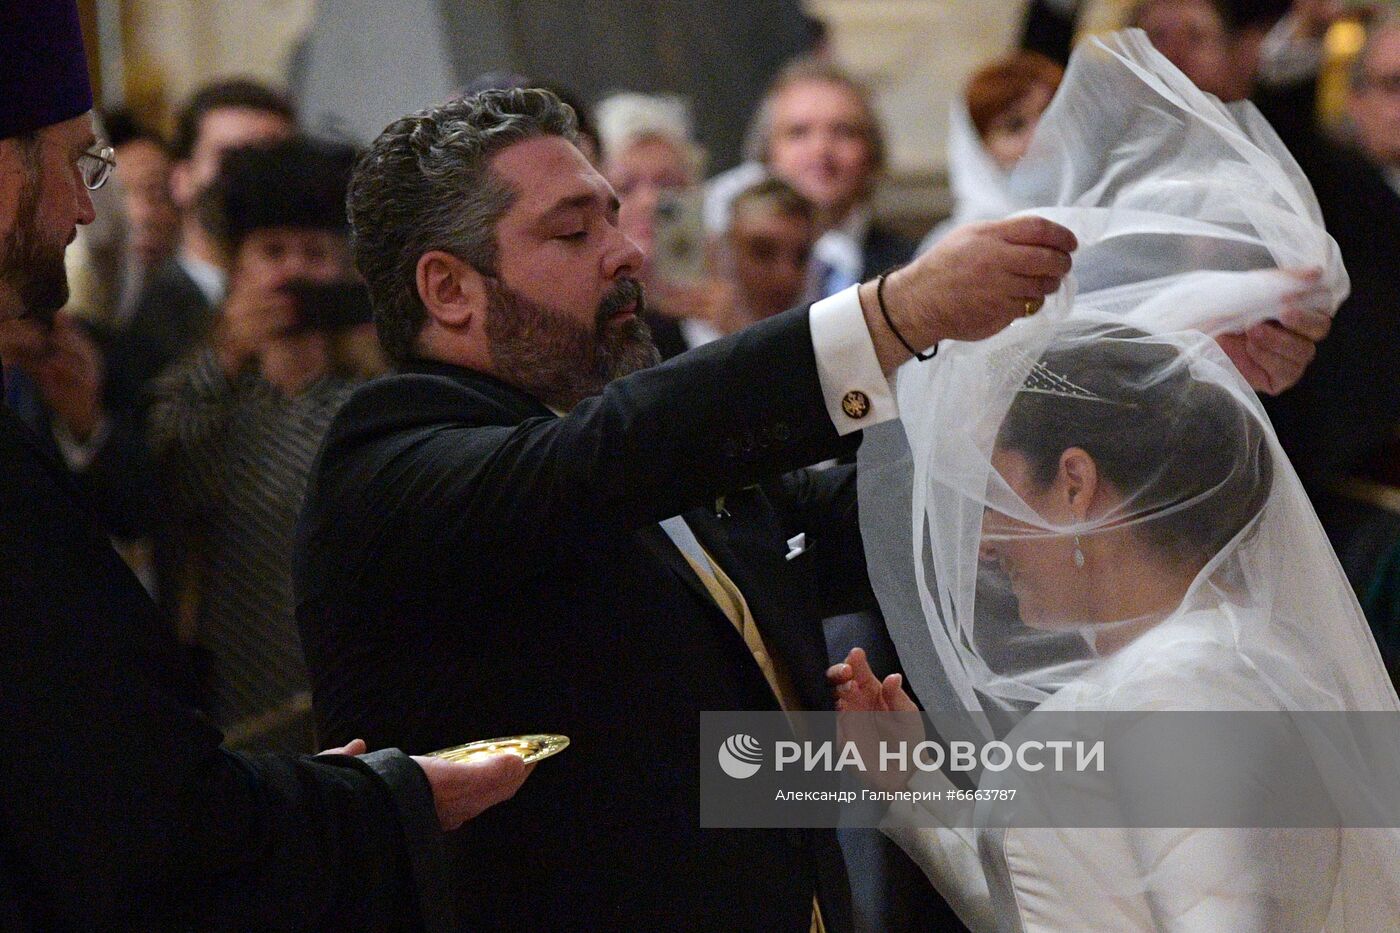 Венчание наследника династии Романовых в Санкт-Петербурге